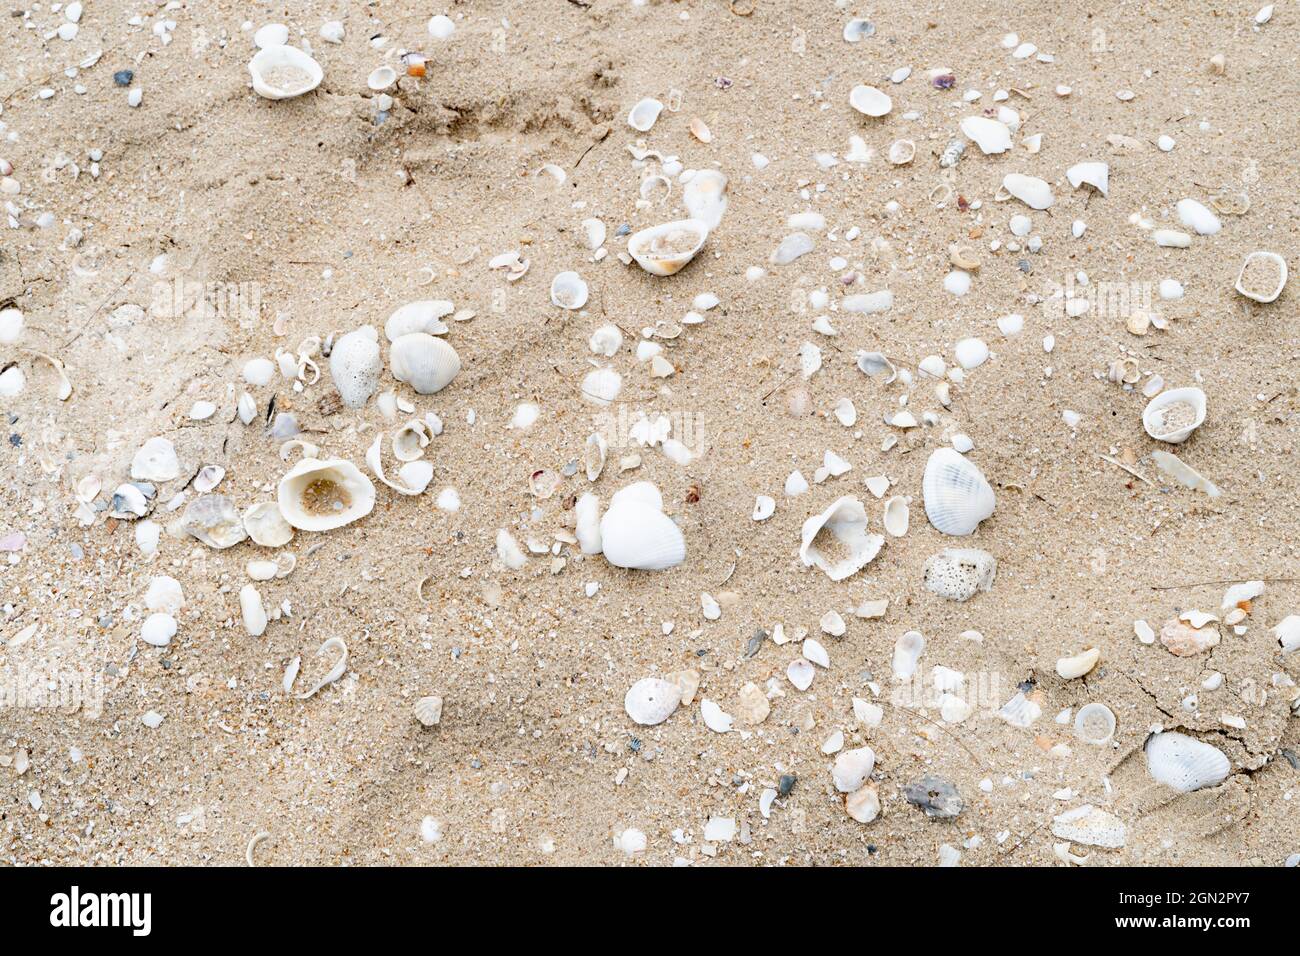 Conchiglie sulla spiaggia sabbiosa del mare Foto Stock